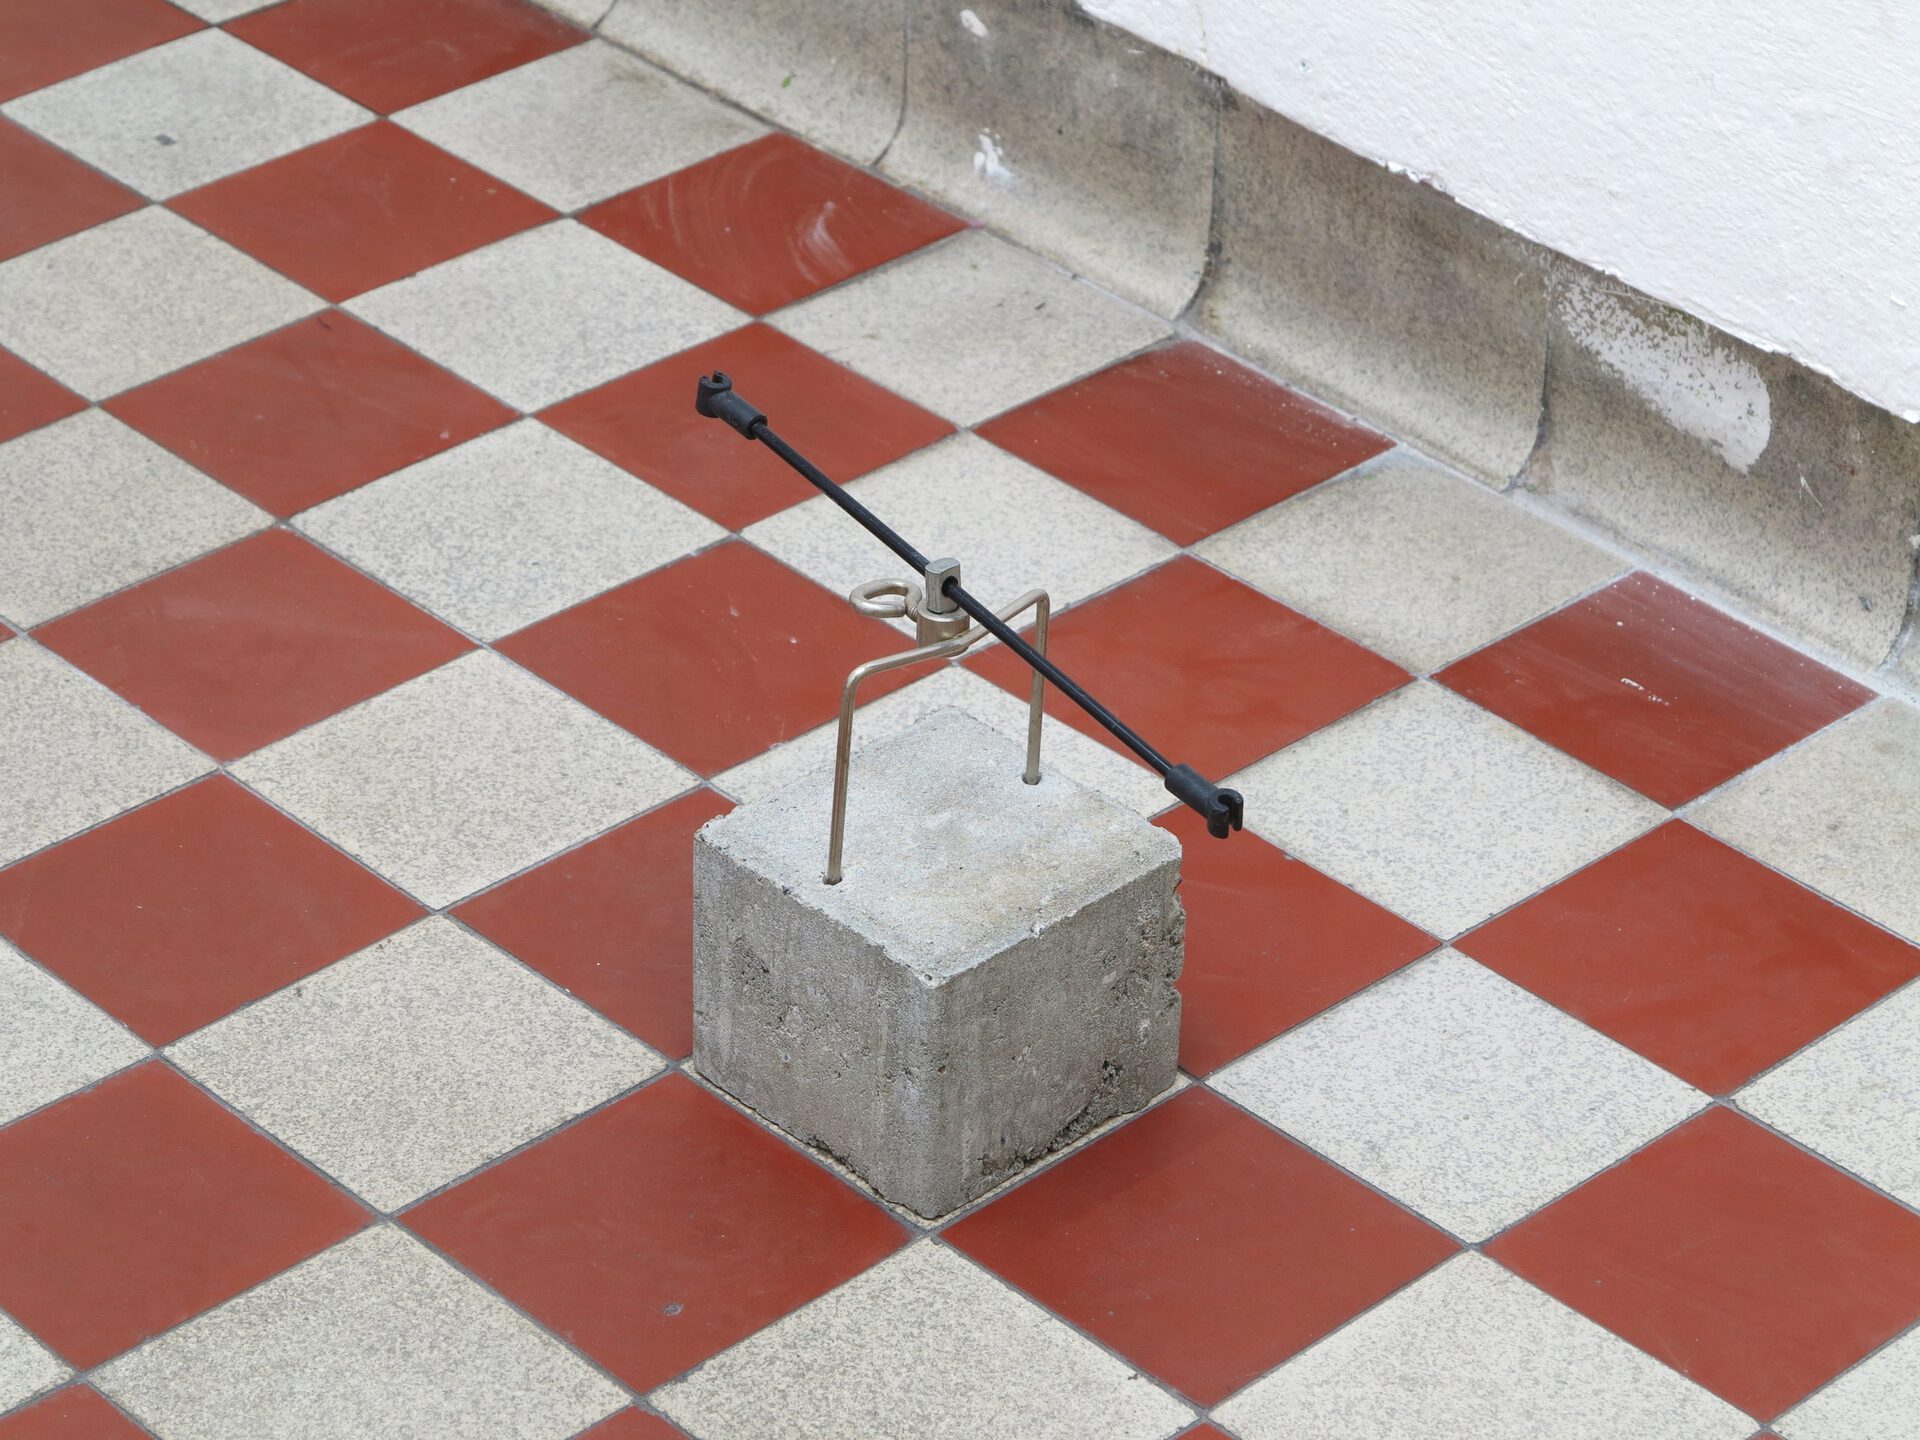 Tobias Brembeck, Plc power, 2010, concrete, metal, Dimension: 17 x 10 x 19 cm